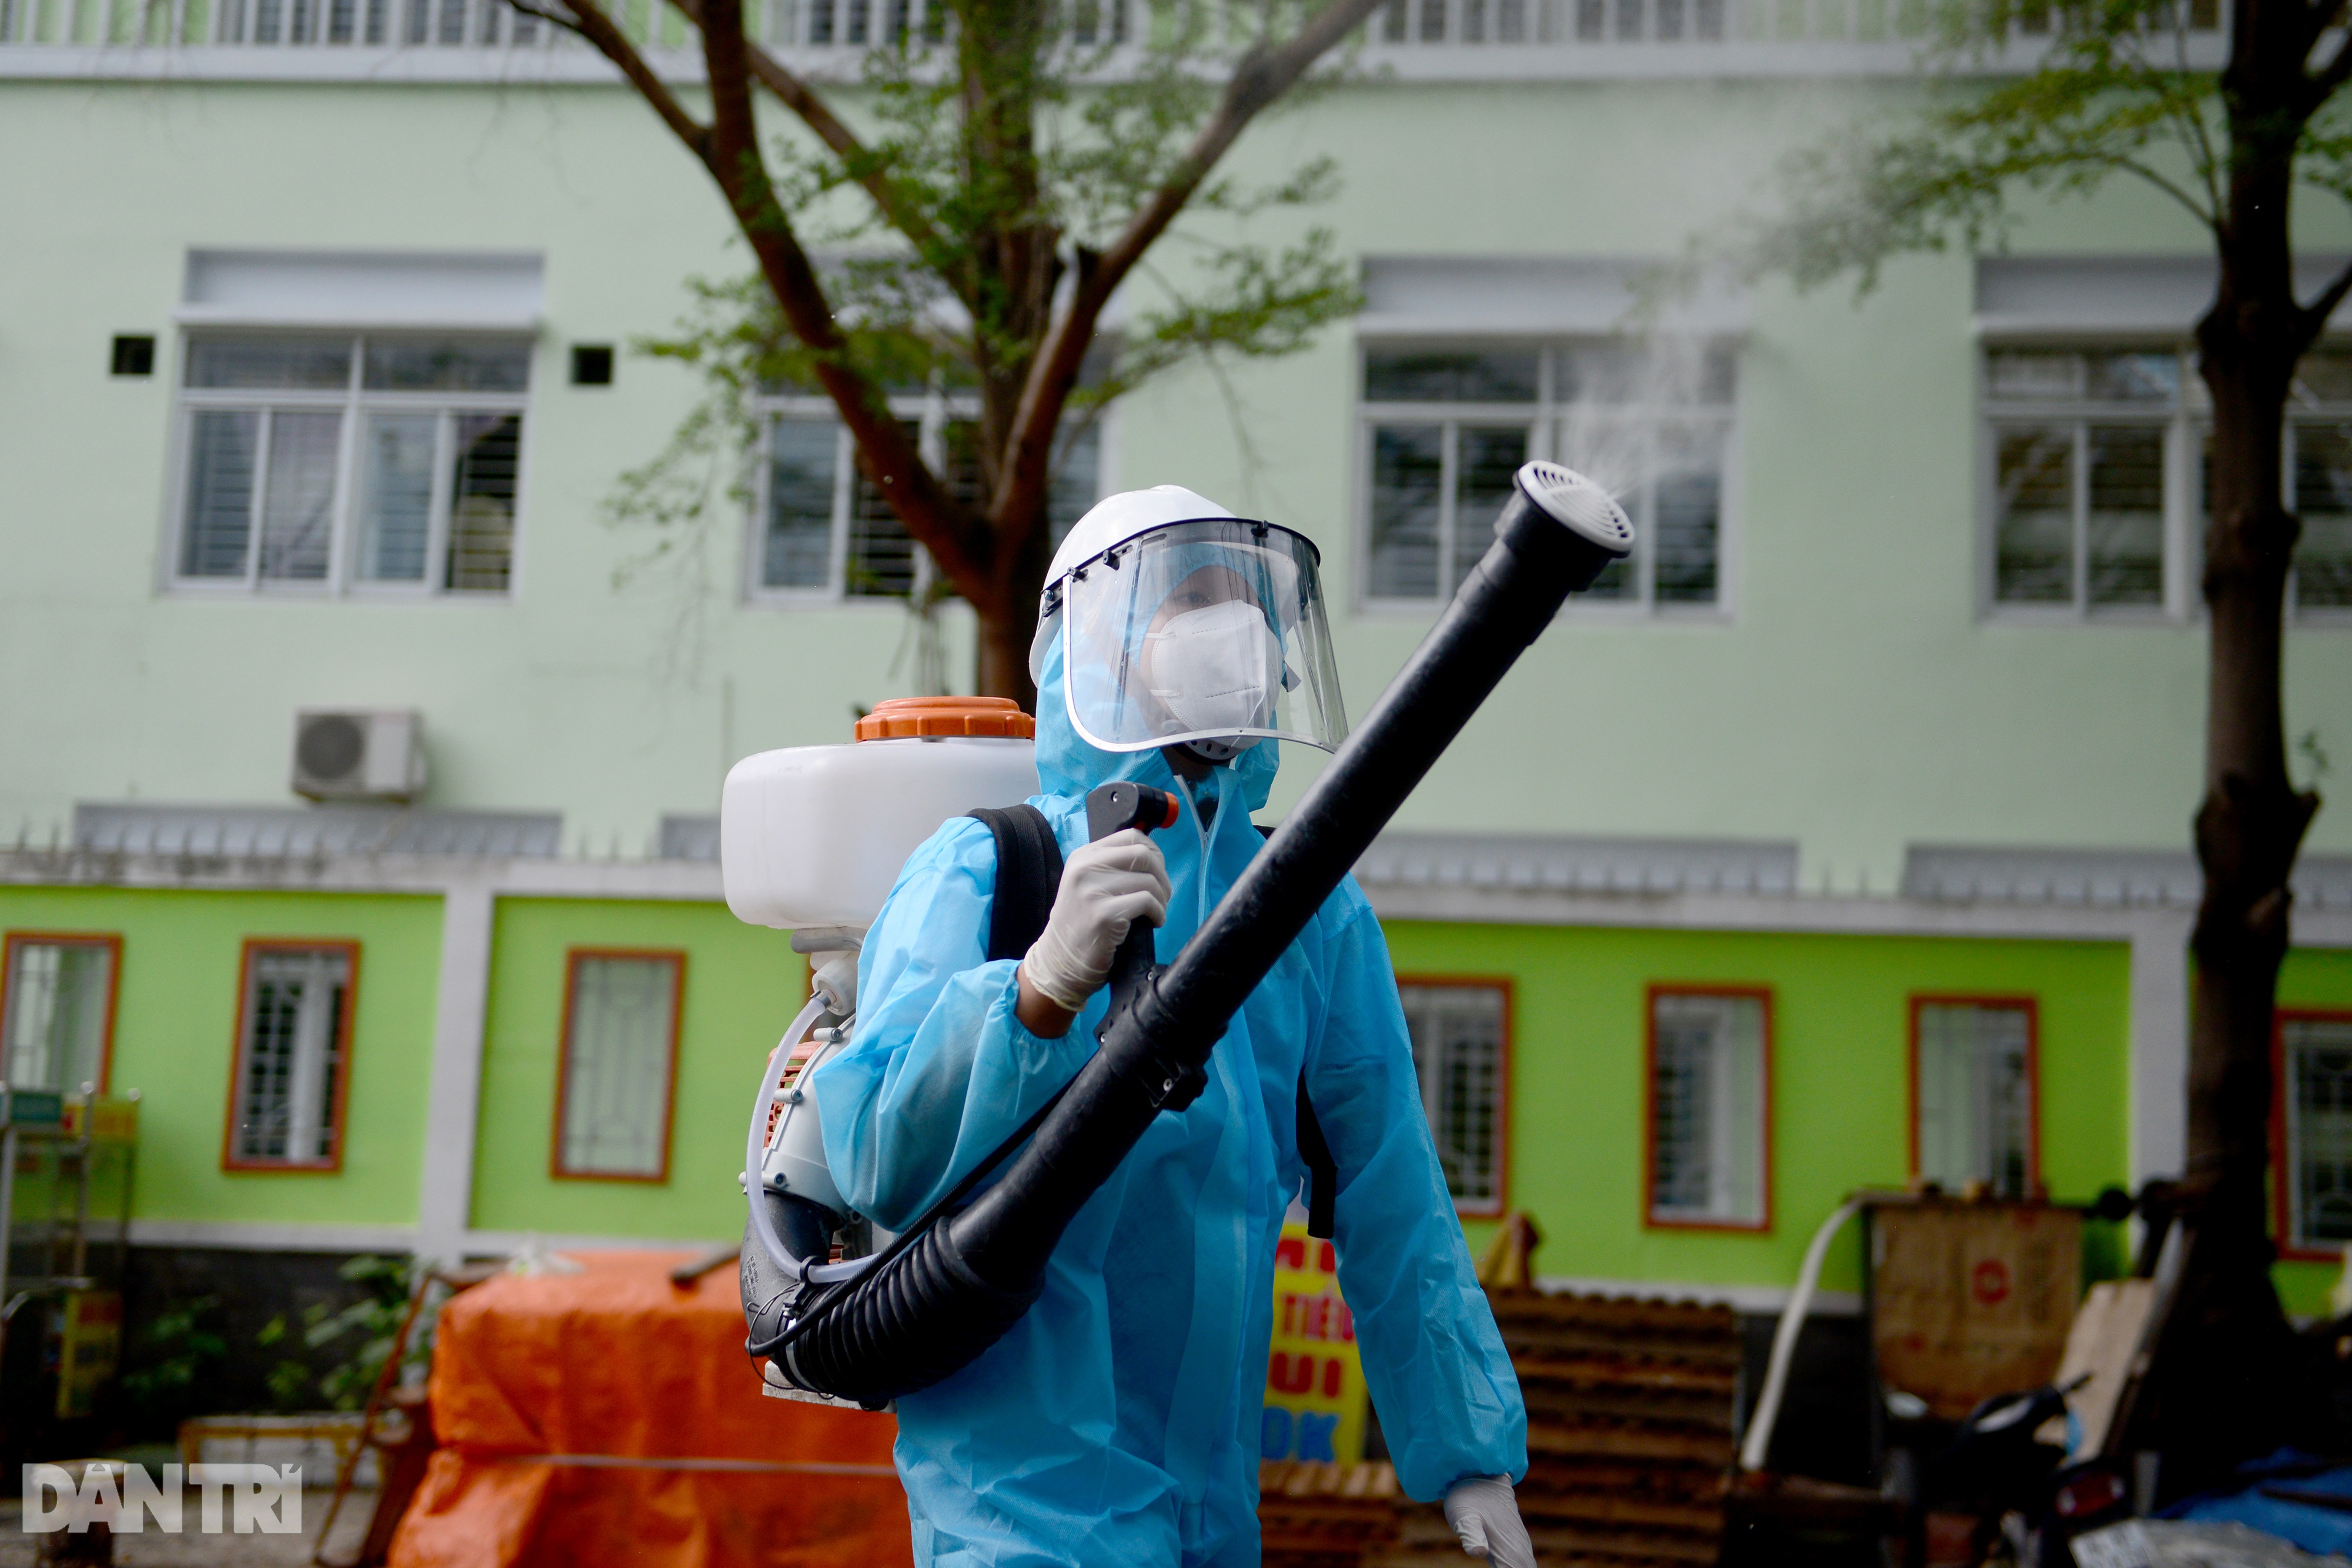 Thiếu niên 15 tuổi tình nguyện tham gia đội khử khuẩn đường phố ở Sài Gòn - 3